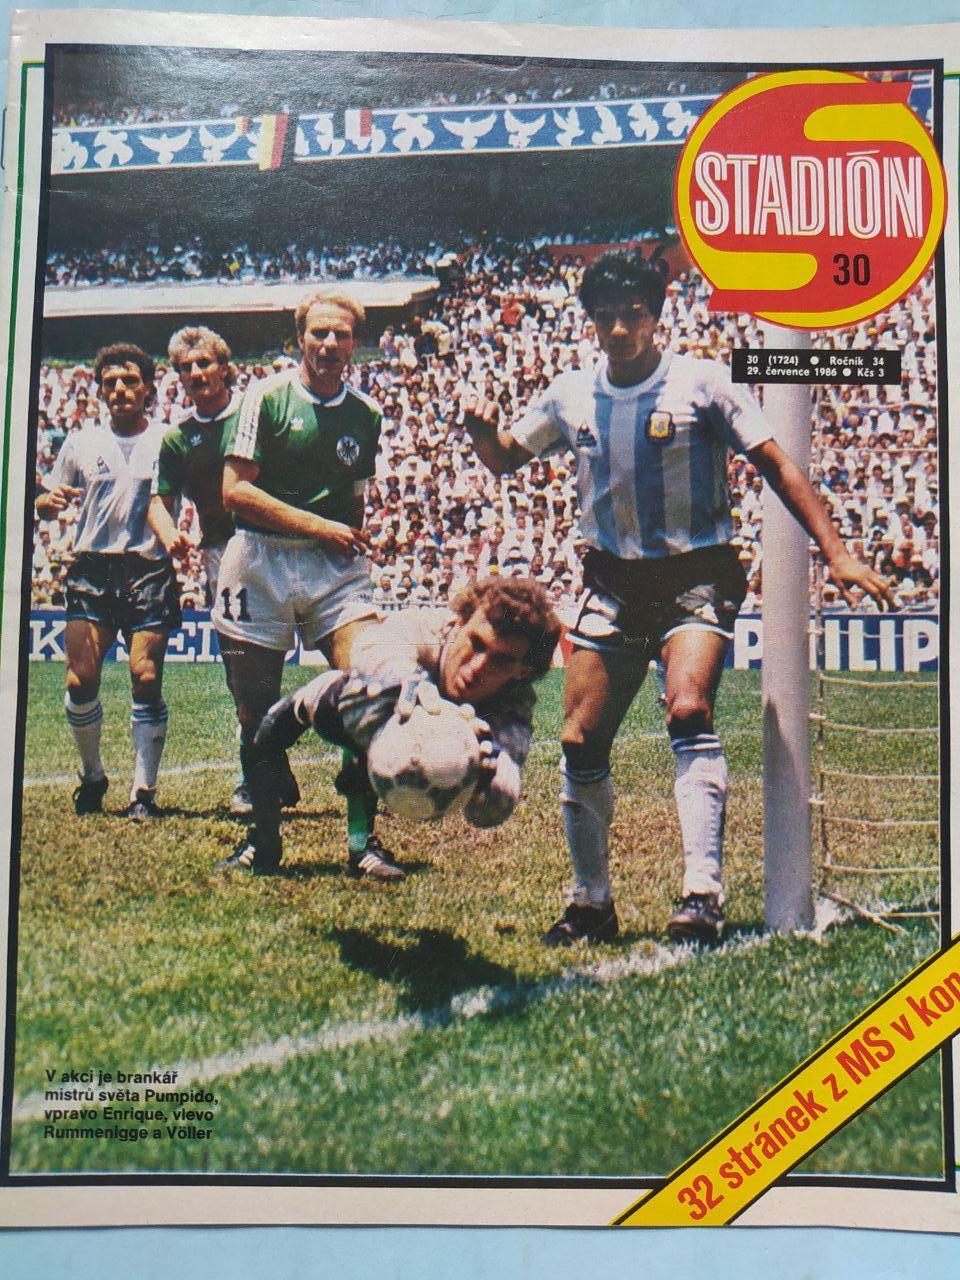 Спецвыпуск Стадион Чехия № 30 за 1986 г. посвящен чм футбол в Мексике 1986 г.